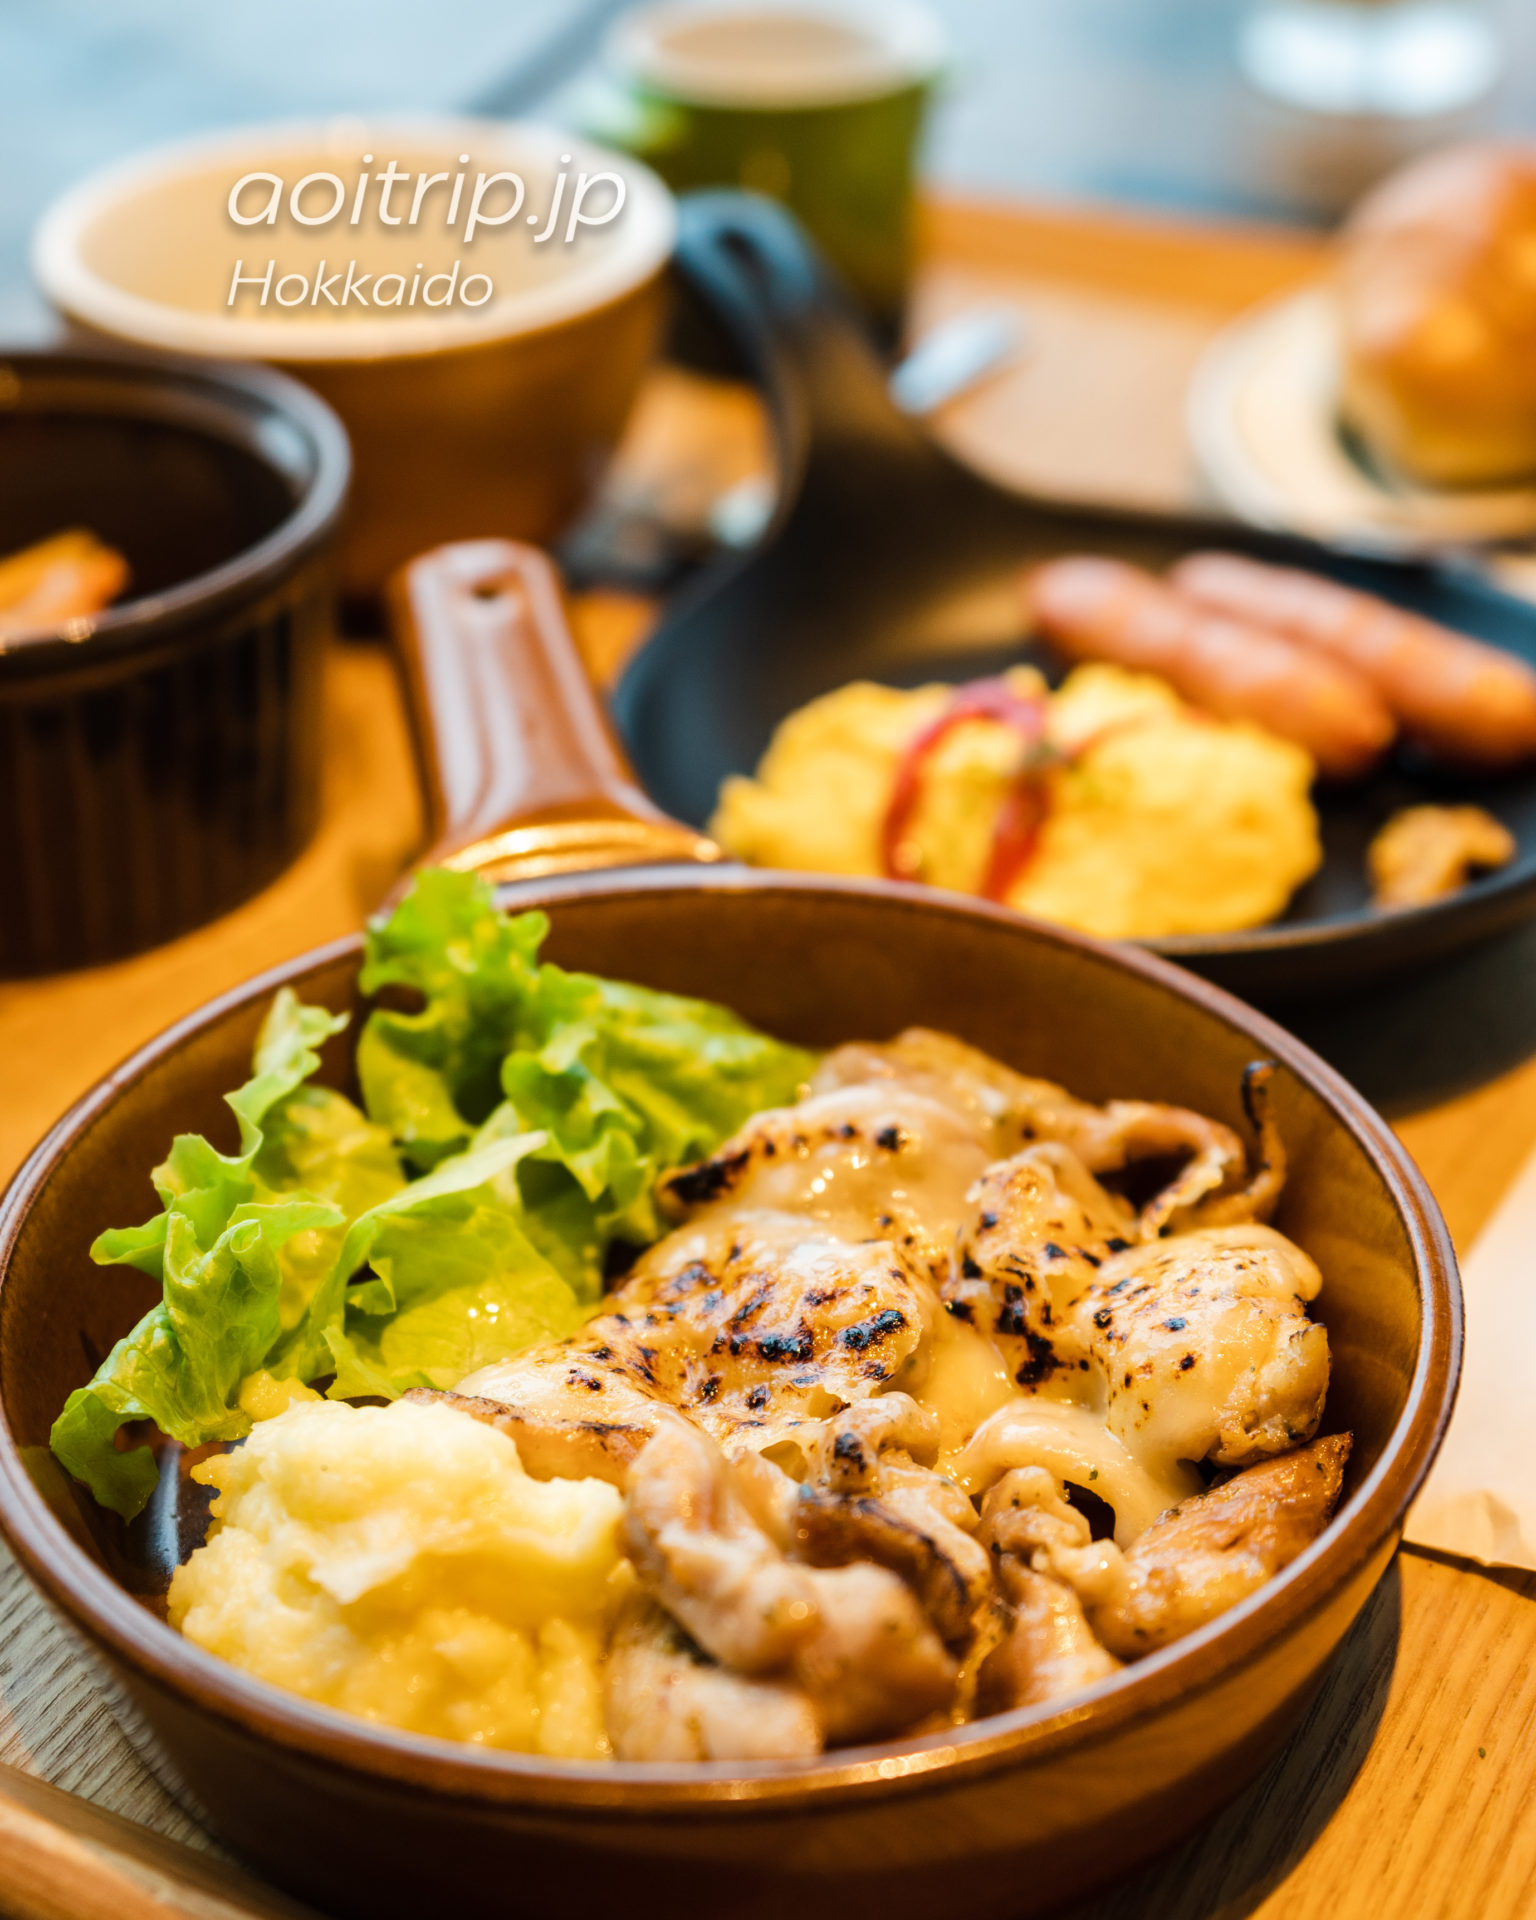 星野リゾートトマム〜鉄板焼きの店〜 GRILLED・AGIの朝食 中札内鶏のグリル ラクレットチーズがけ